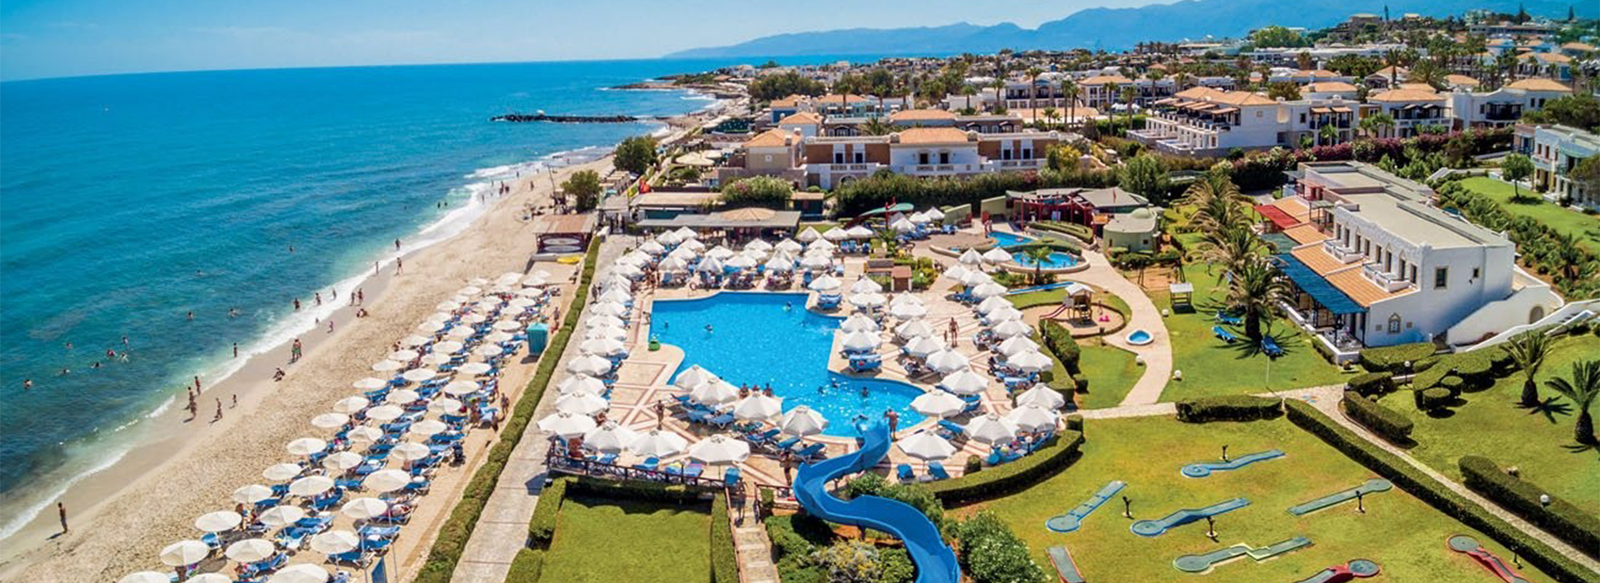 Incantevole Villaggio sulla Costa Cretese, All Inclusive, servizio spiaggia e volo incluso, 7 notti da € 690